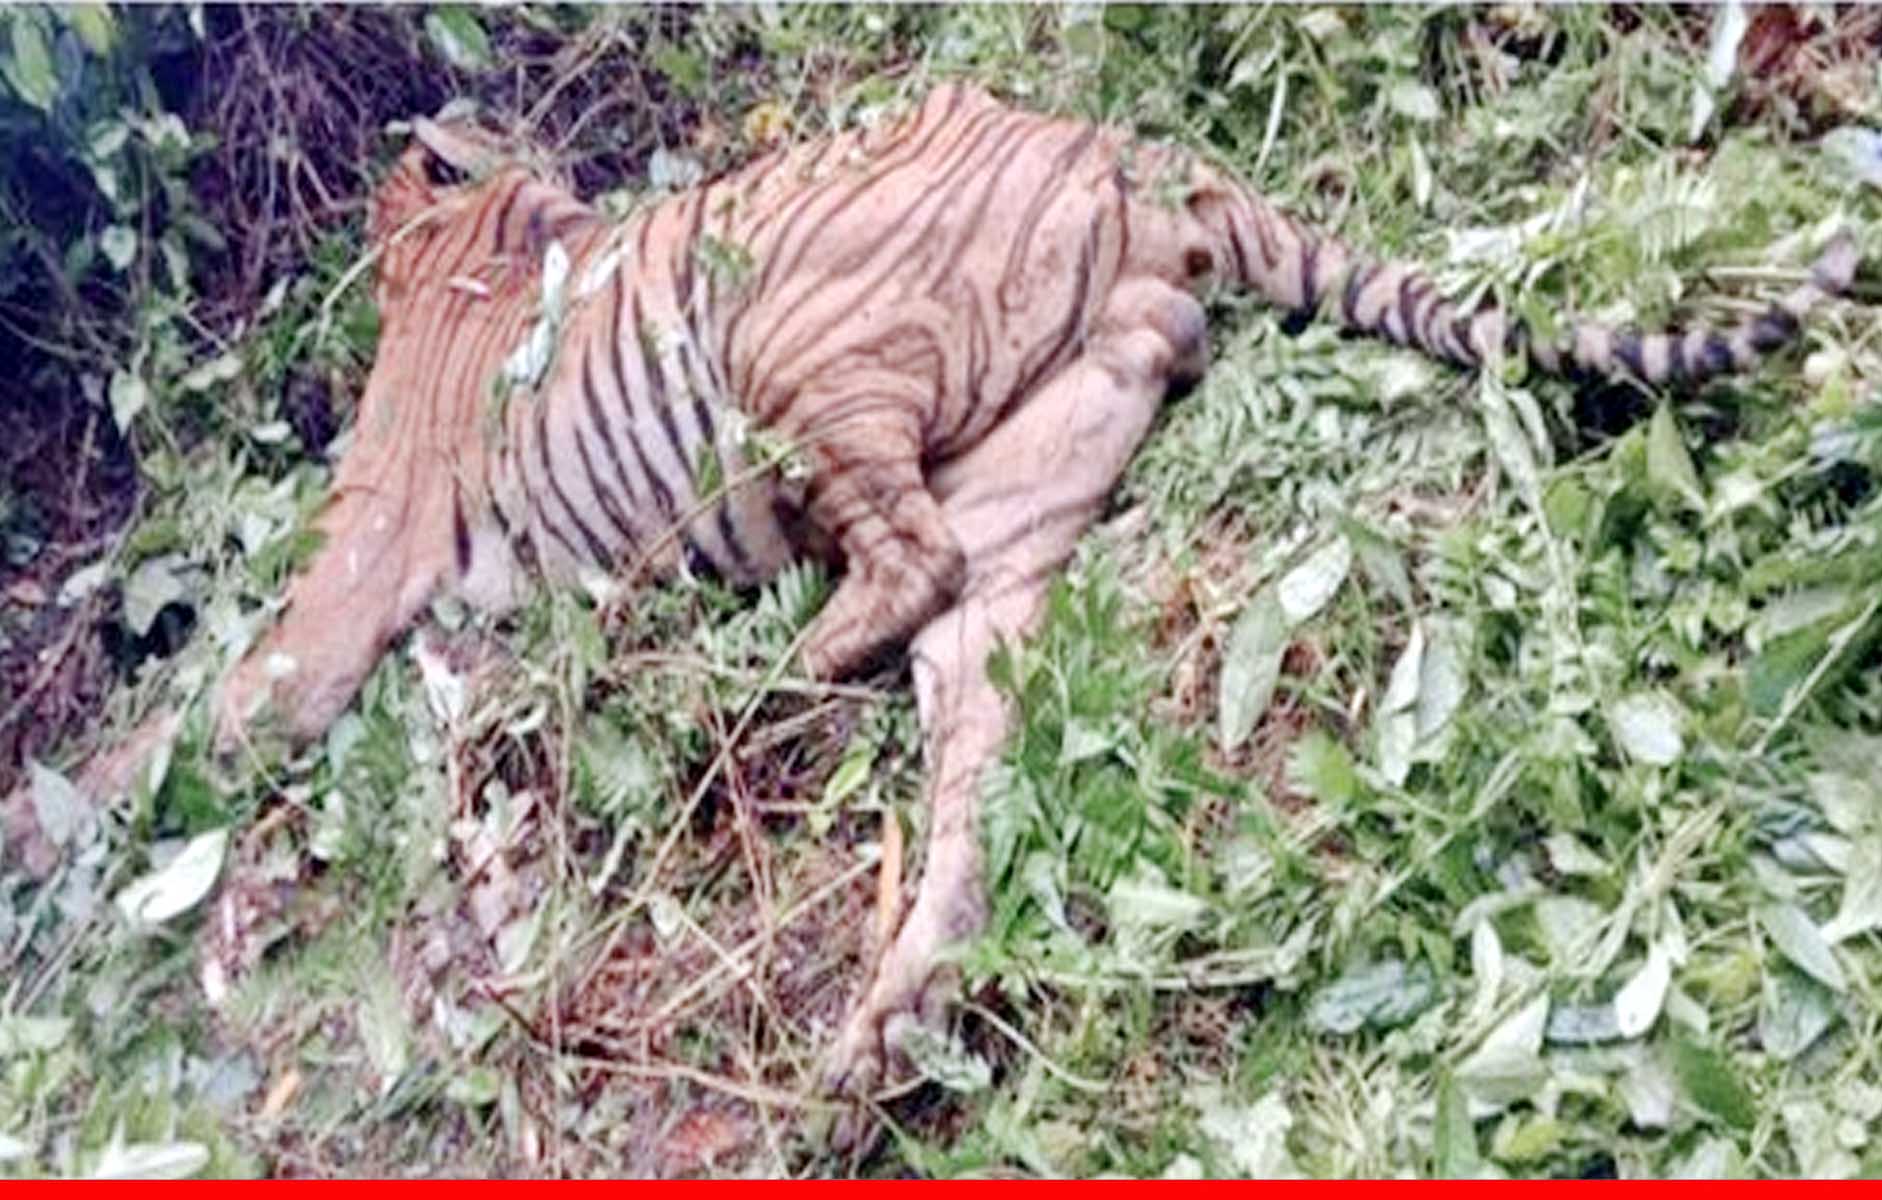 असम: काजीरंगा नेशनल पार्क में गोलीबारी में हुई बंगाल टाइगर की मौत